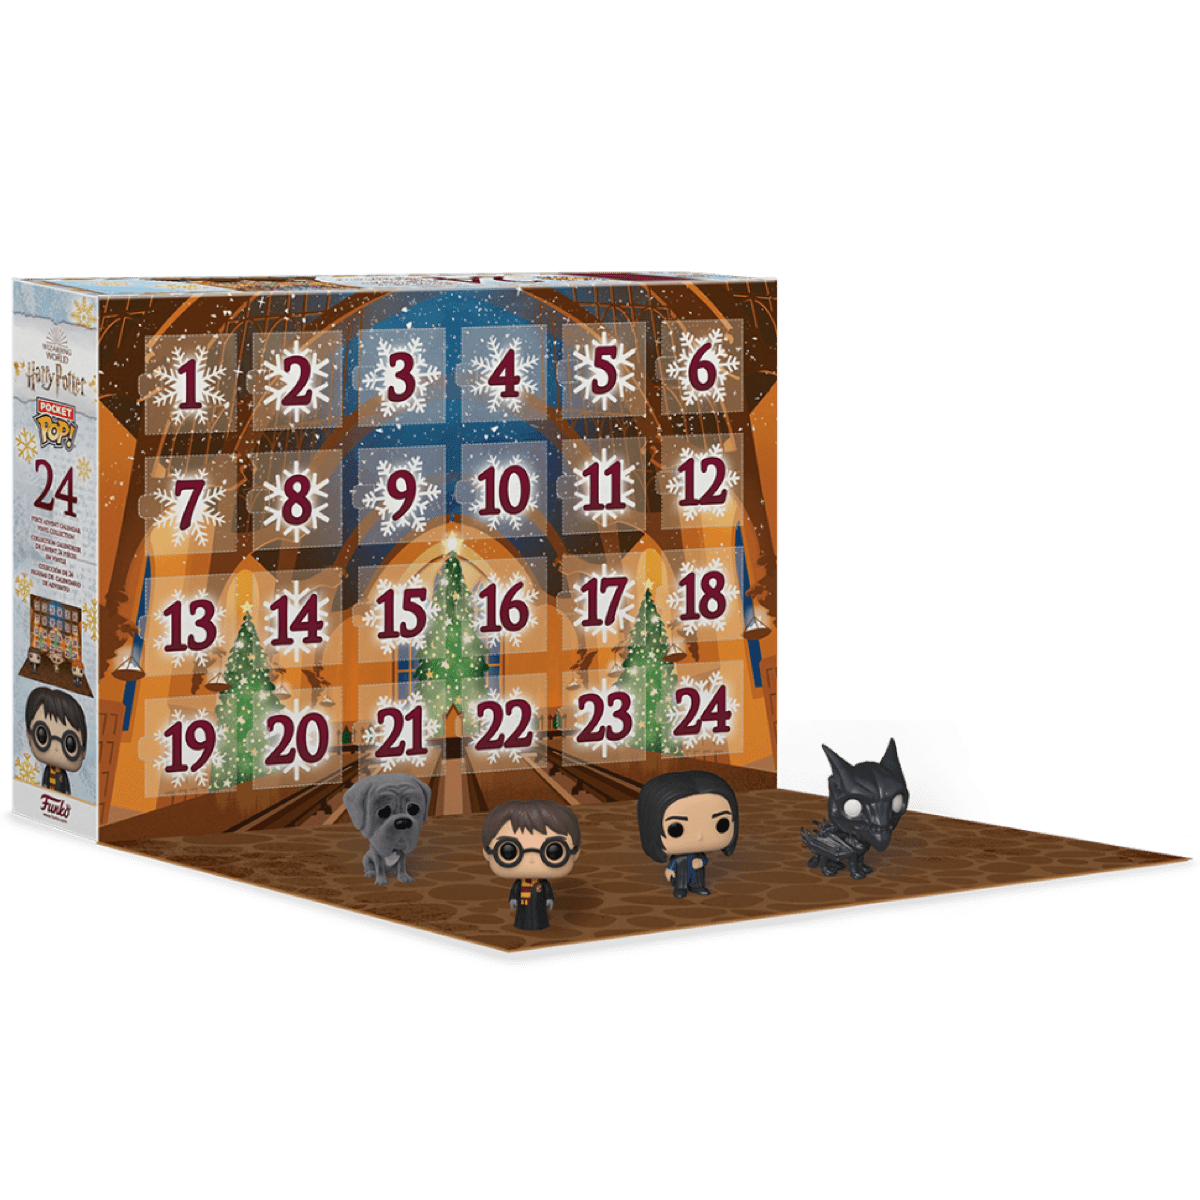 Фигурка Гарри Поттер Адвент Календарь 2021 (Harry Potter 2021 Pocket Pop  Advent Calendar (Vaulted)) – Funko POP